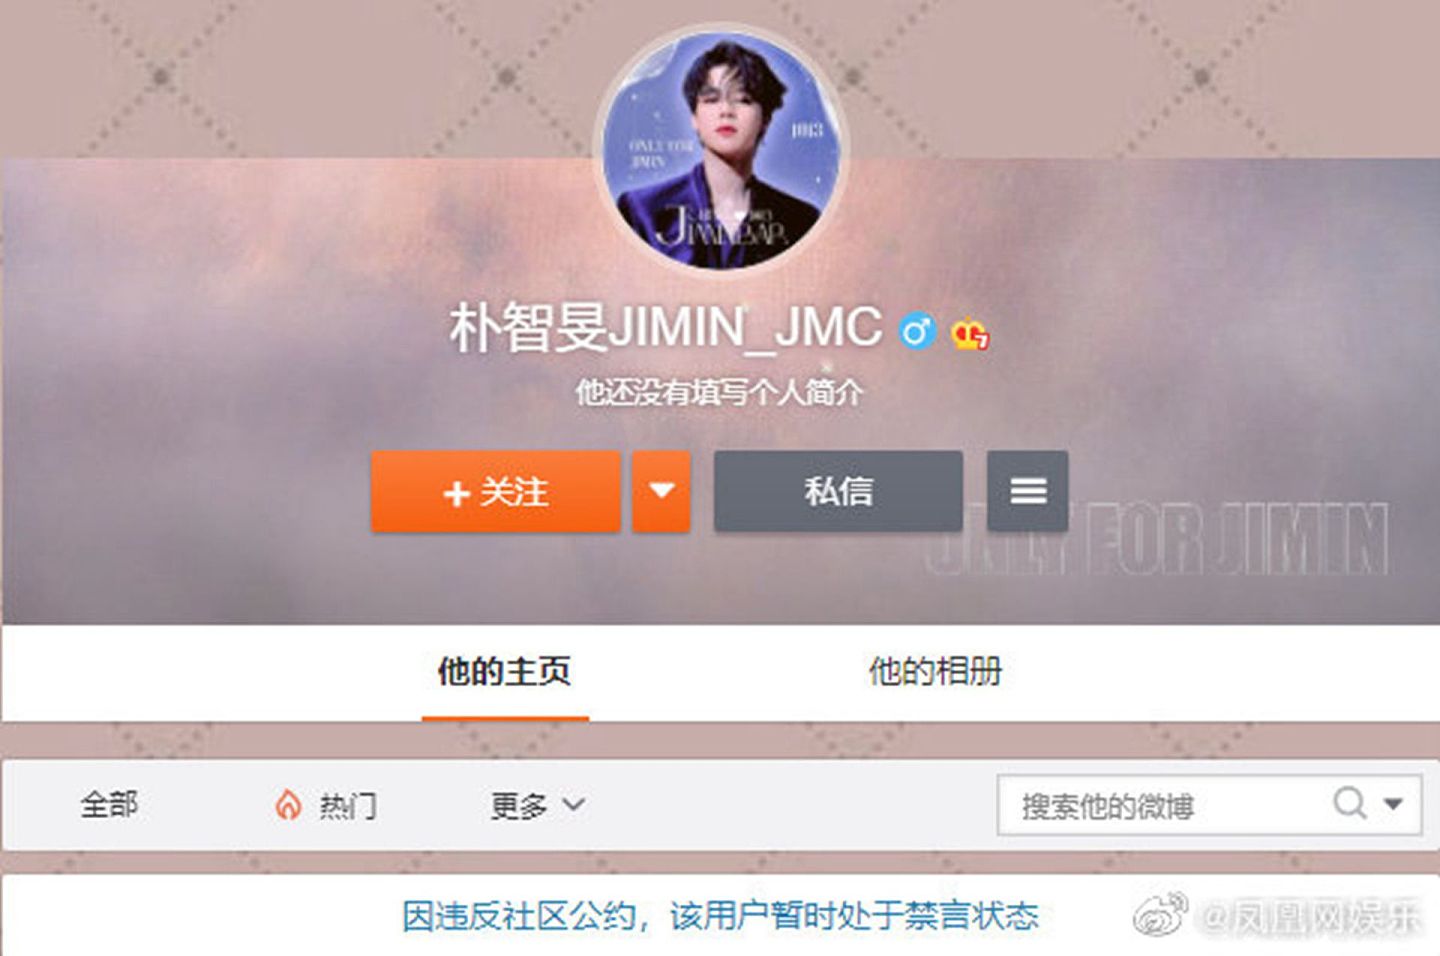 微博账号“朴智旻JIMIN_JMC”被禁言。（微博@朴智旻JIMIN_JMC ）